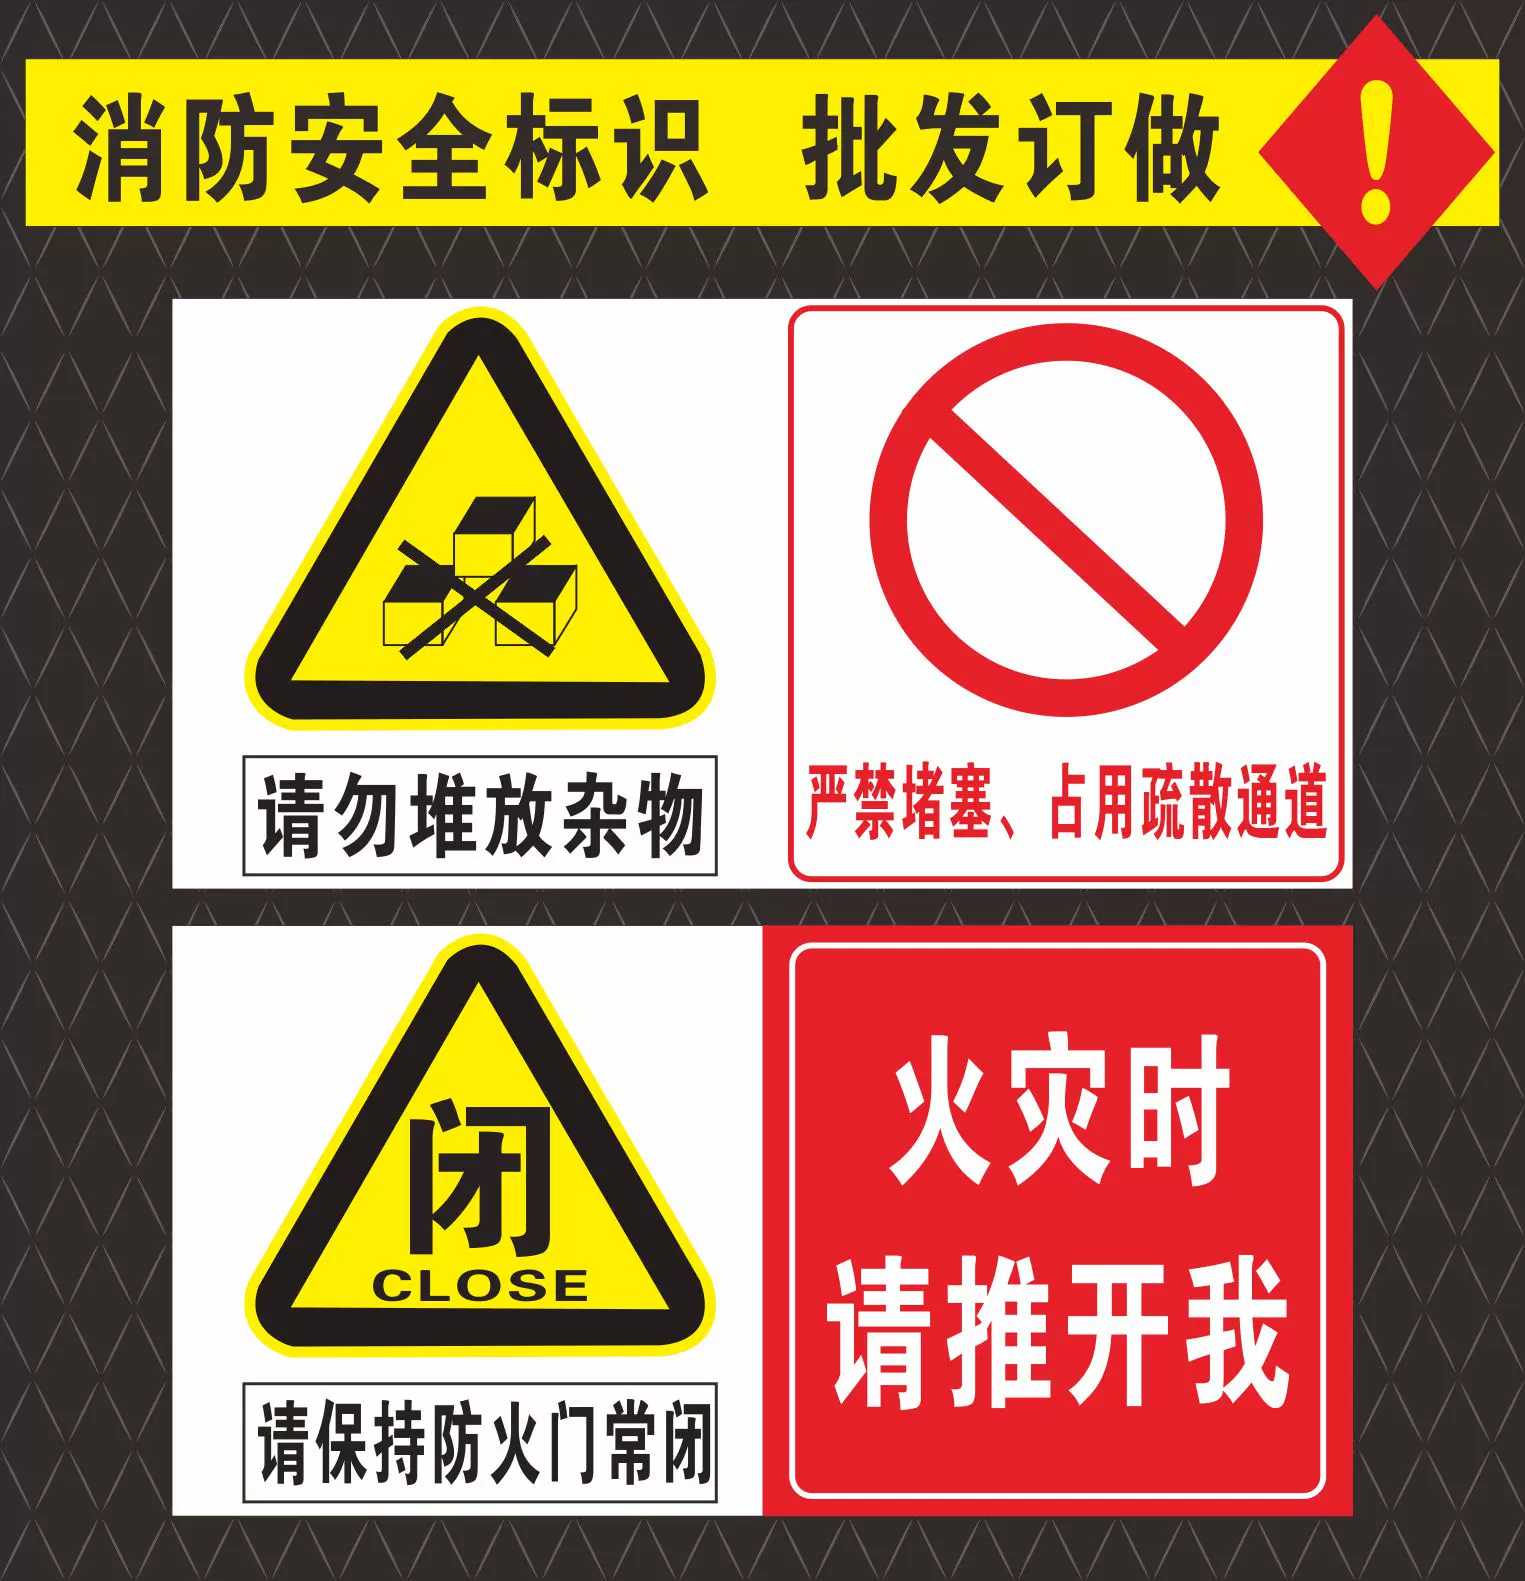 防火門安全門標識常閉式防火門請保持關閉禁止堆放雜物堵塞